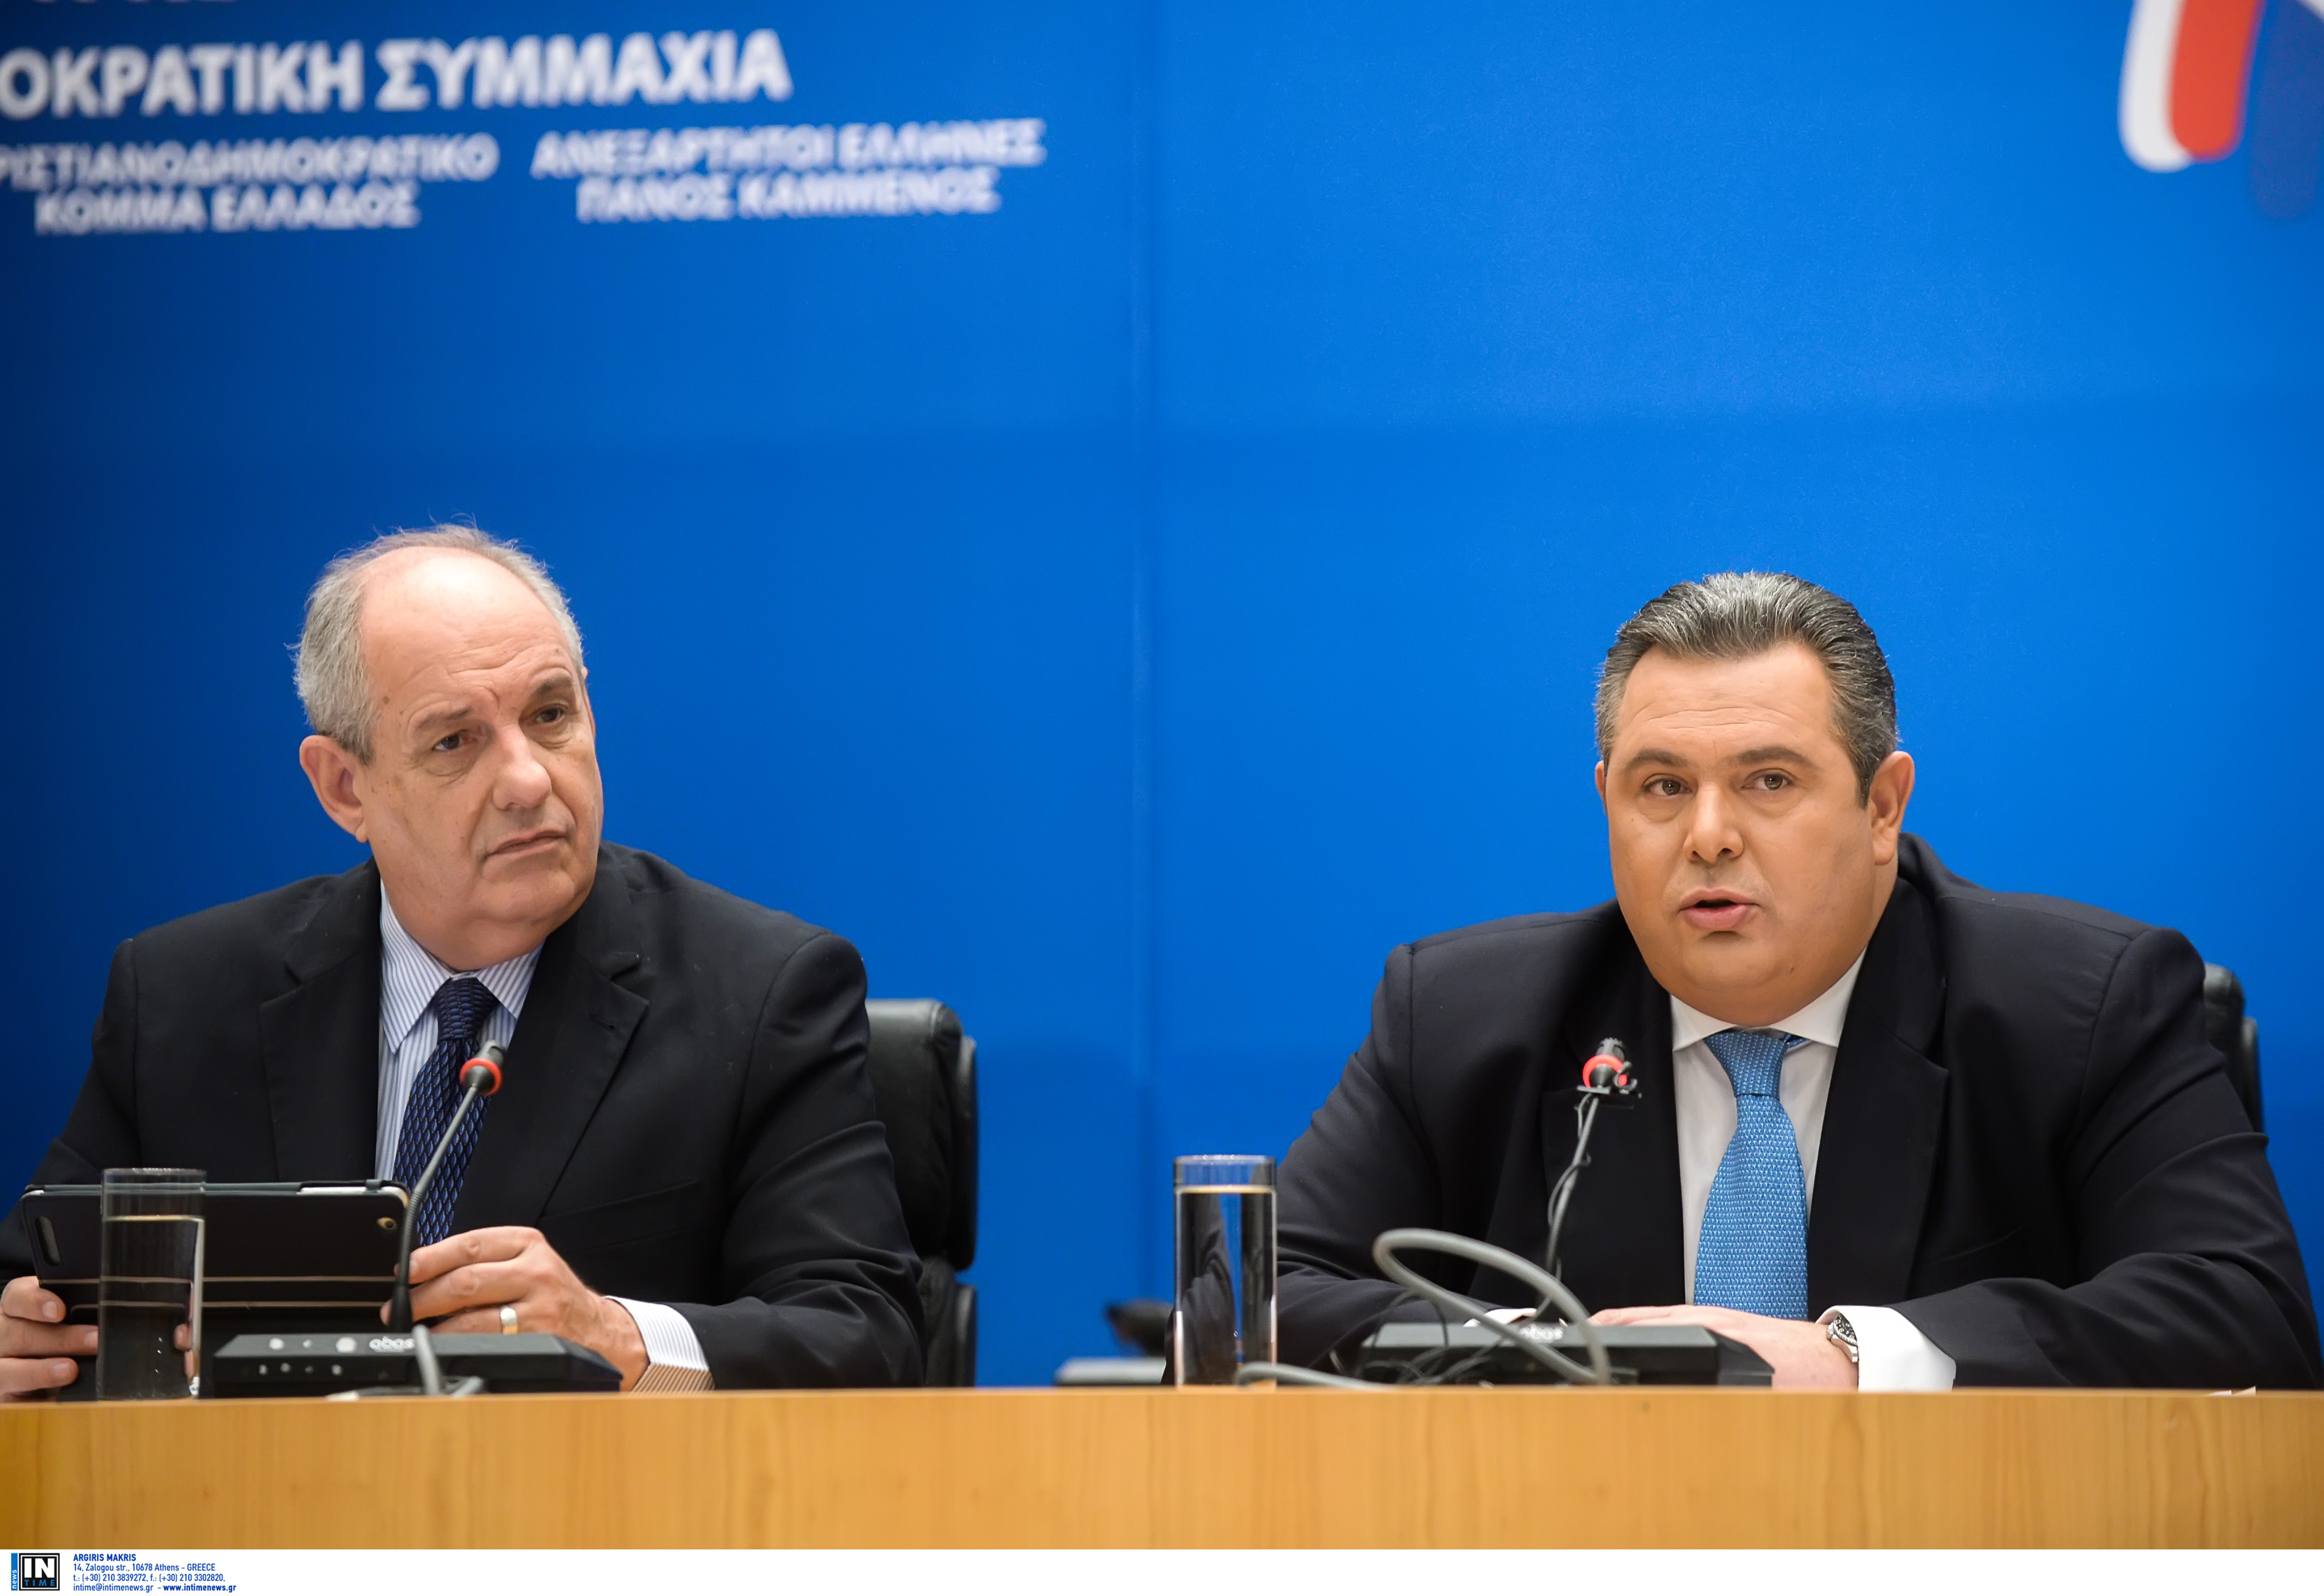 Καμμένος: «Ρυθμιστές των πολιτικών εξελίξεων οι Ανεξάρτητοι Έλληνες»